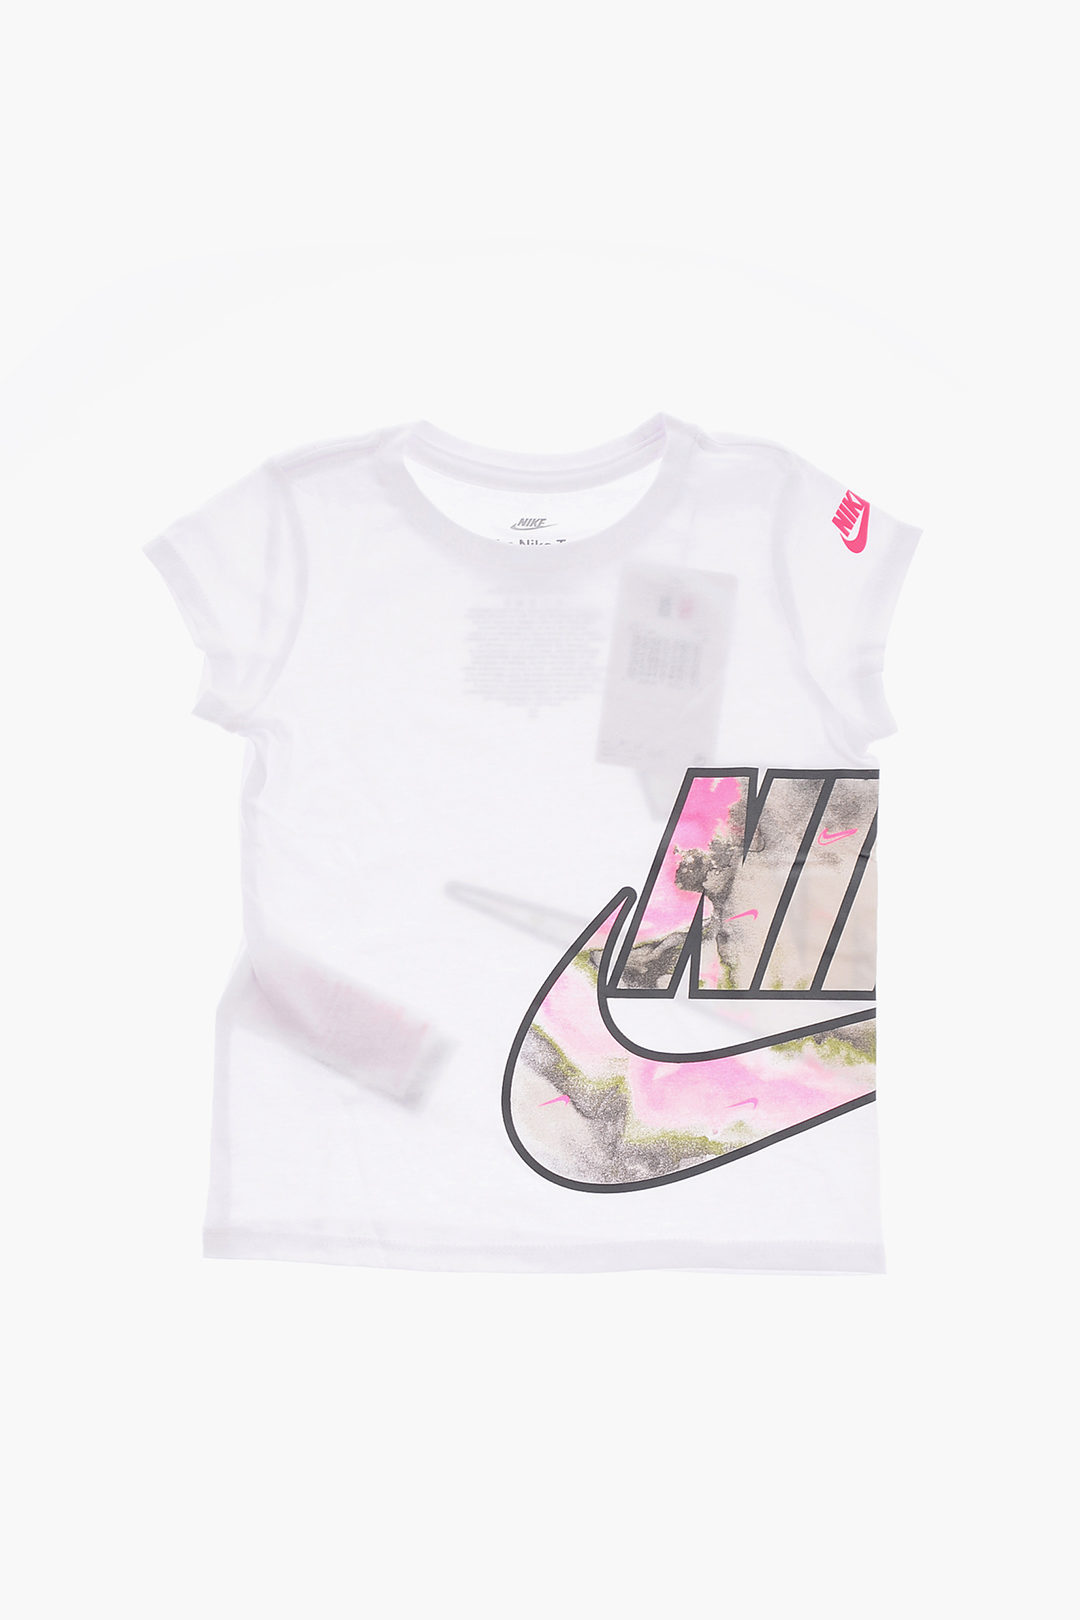 pago Diplomacia Celsius Nike KIDS Printed FUTURA T-Shirt girls - Glamood Outlet